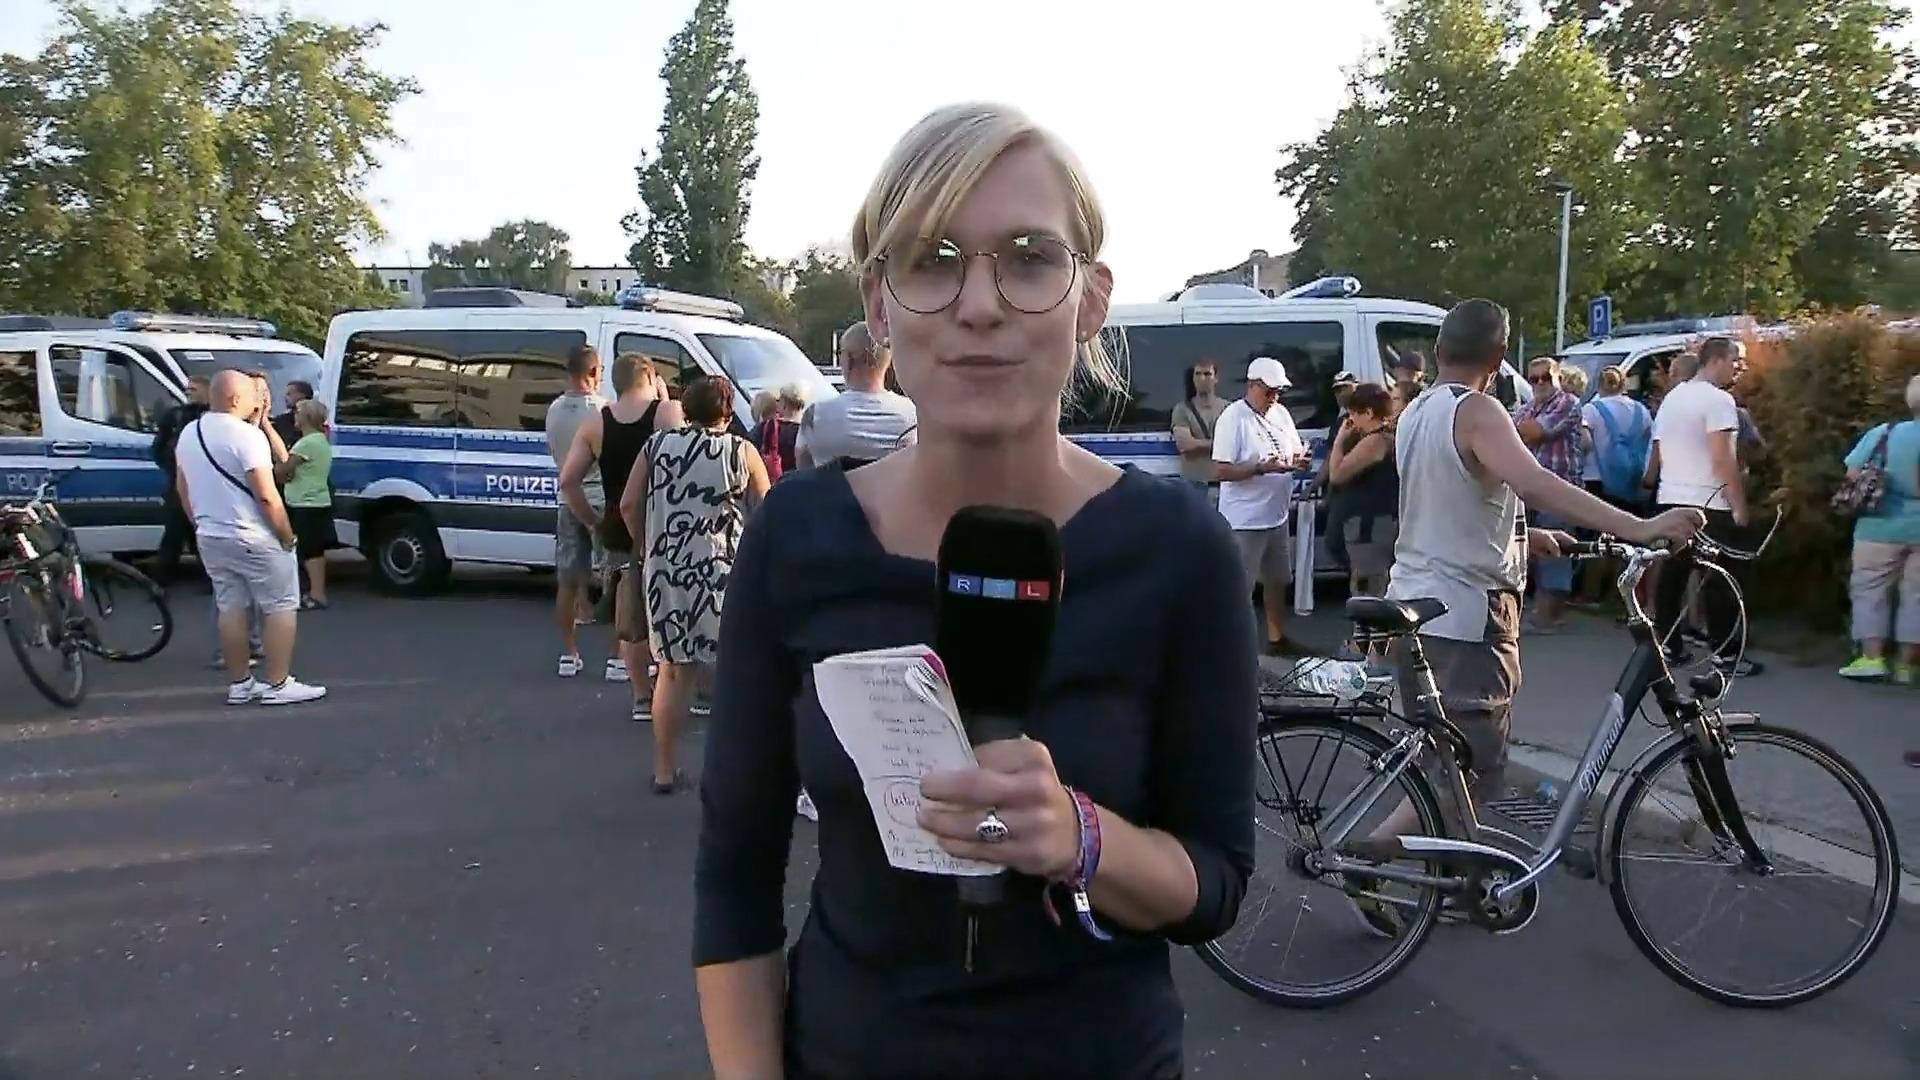 Reporter RTL in loco: stato d'animo caldo e tensione Schultz nella demo